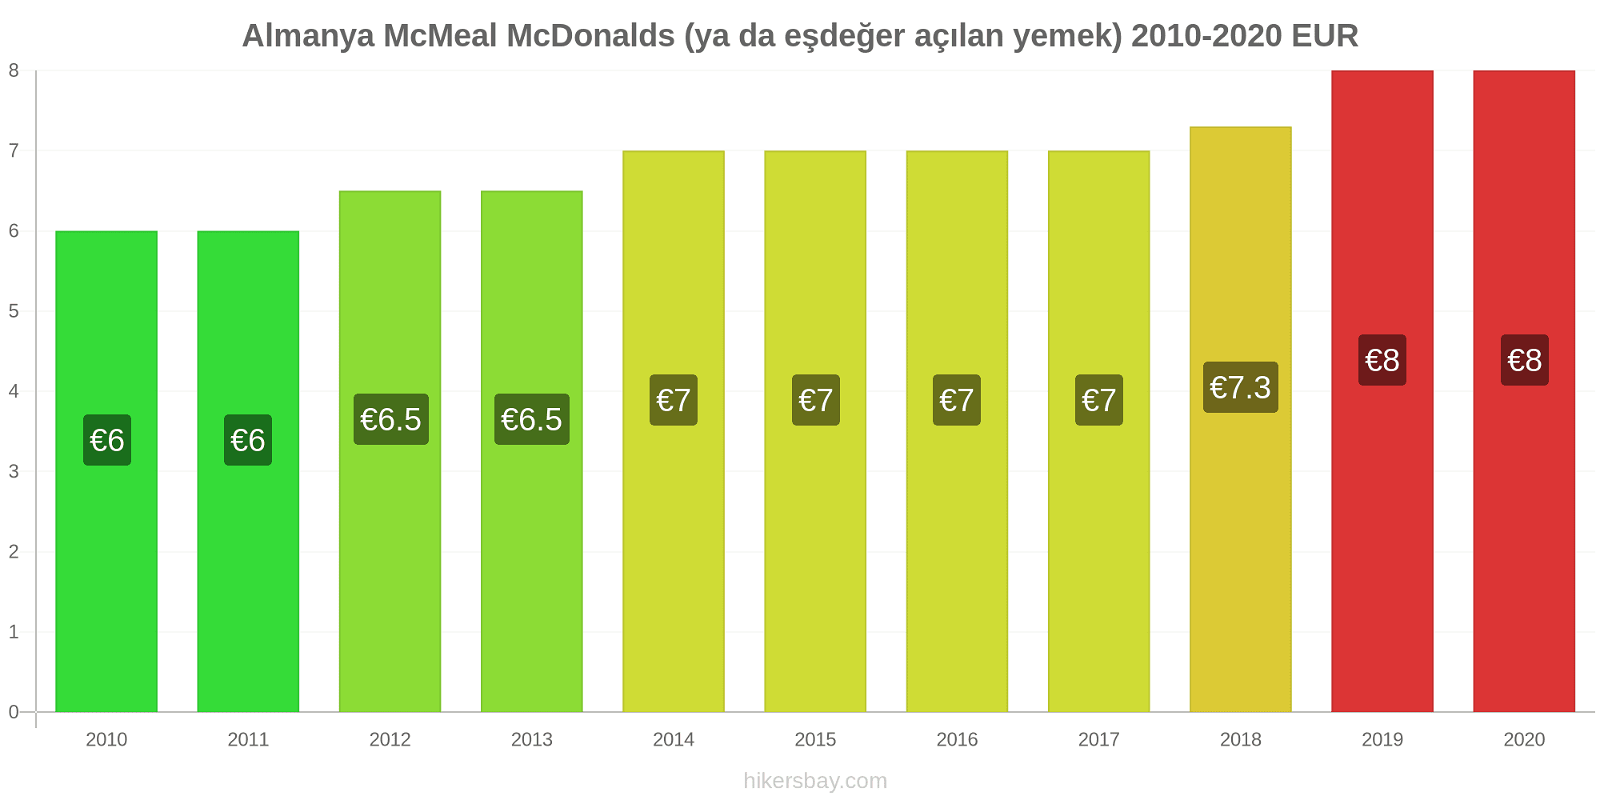 Almanya fiyat değişiklikleri McMeal McDonalds (ya da eşdeğer açılan yemek) hikersbay.com